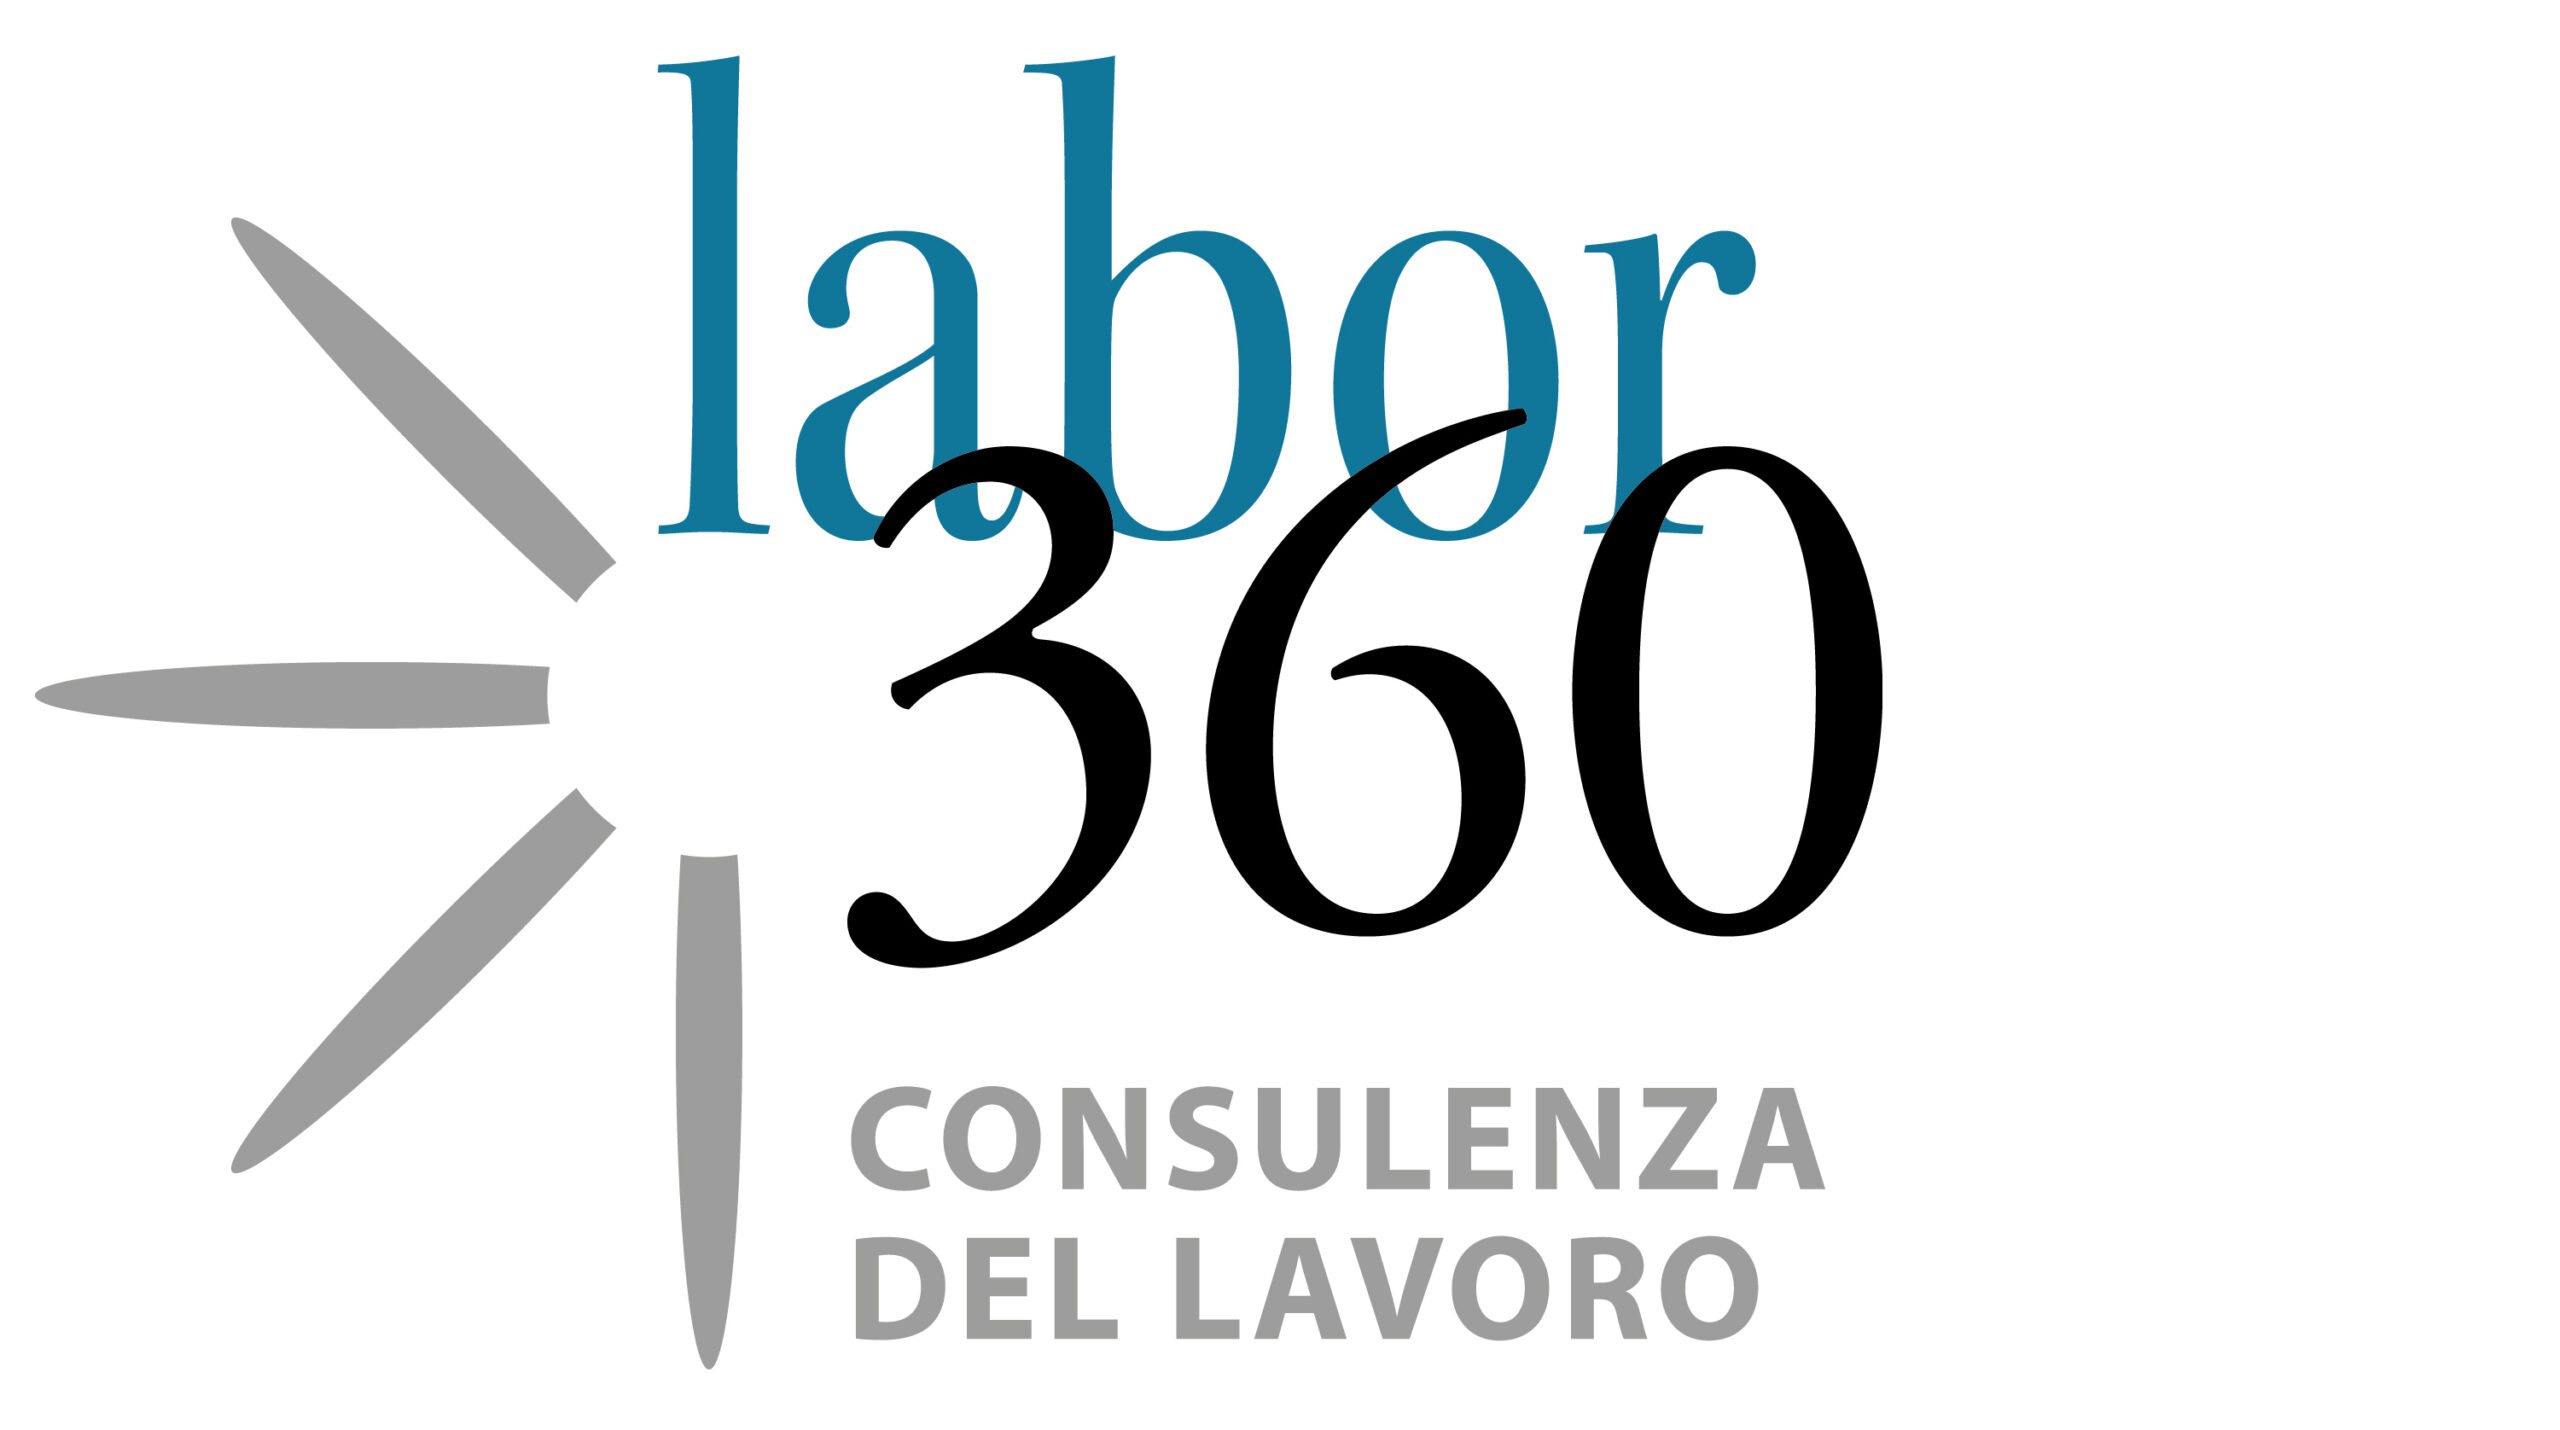 Labor - Consulenza del lavoro